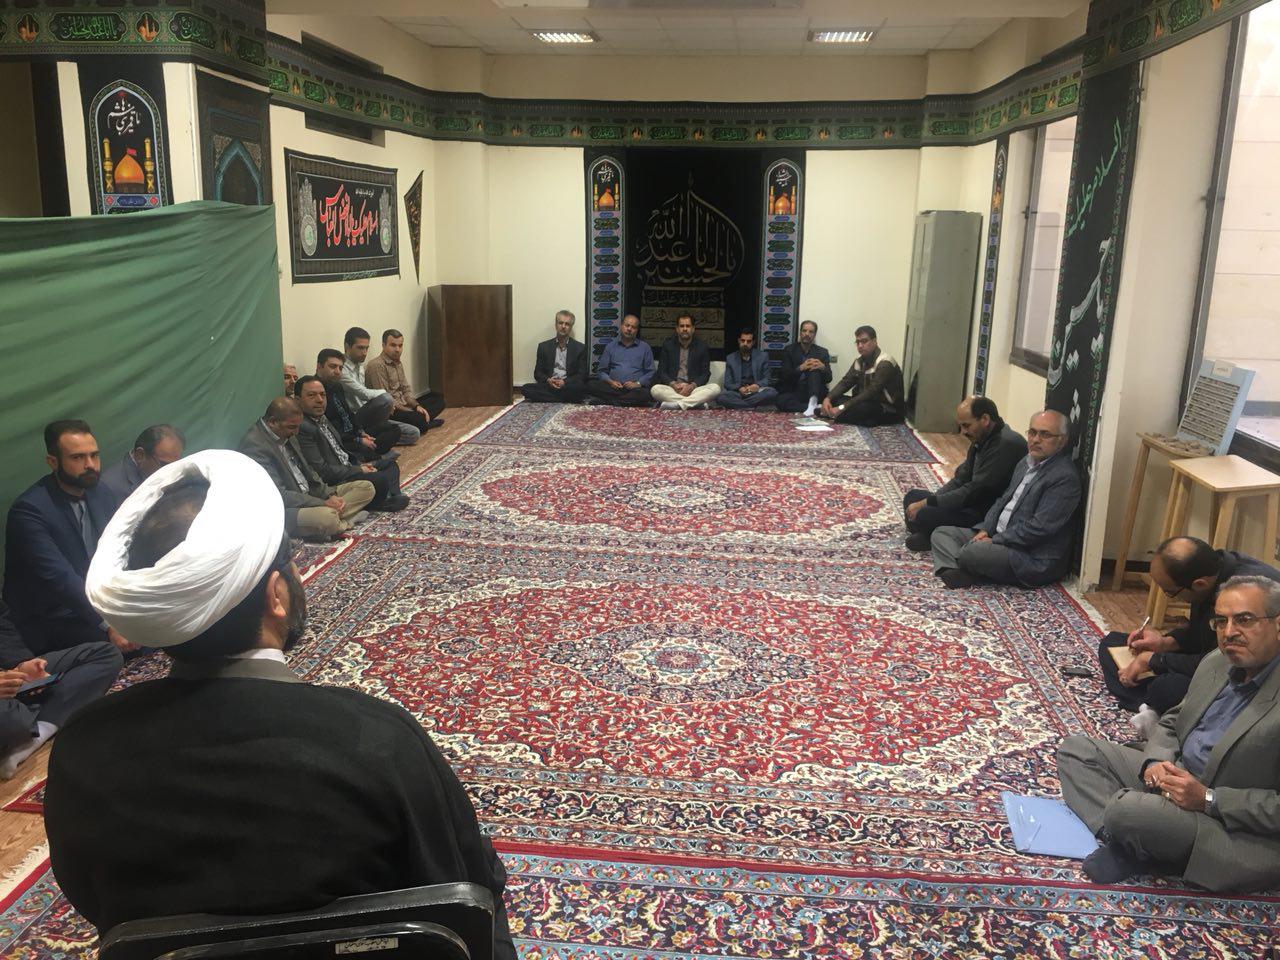 #جلسه برگزاری جلسه هفتگی کلاس تفسیر سوره حجرات توسط حجت الاسلام و المسلمین هاشمی در محل نمازخانه